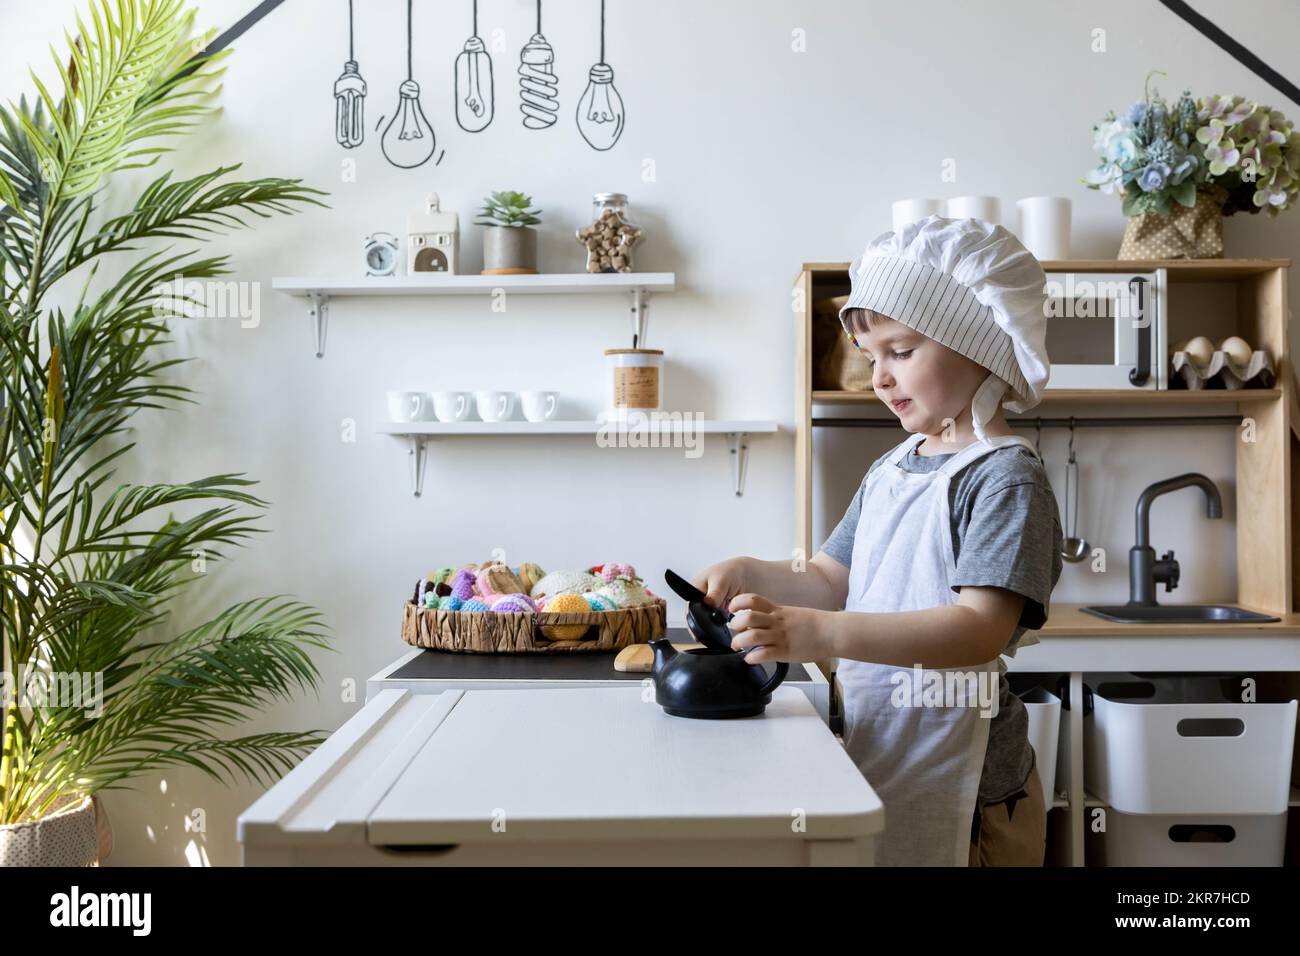 Set de cocina infantil: delantal y gorro de niño Legox